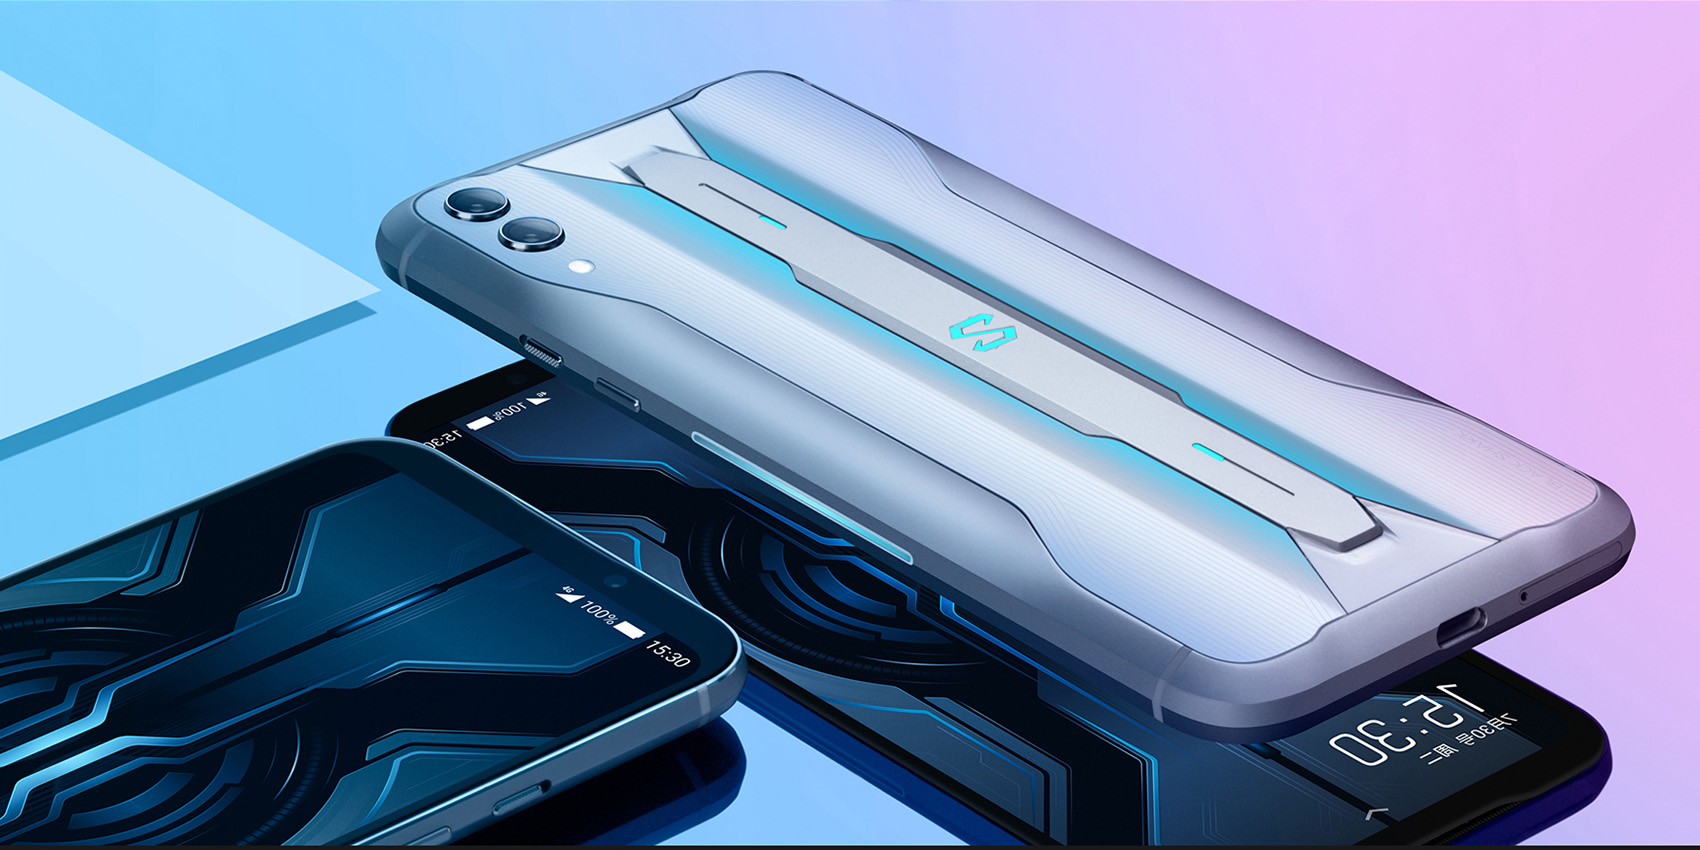 Xiaomi's Black Shark 2 gaming phone packs a pressure-sensitive display